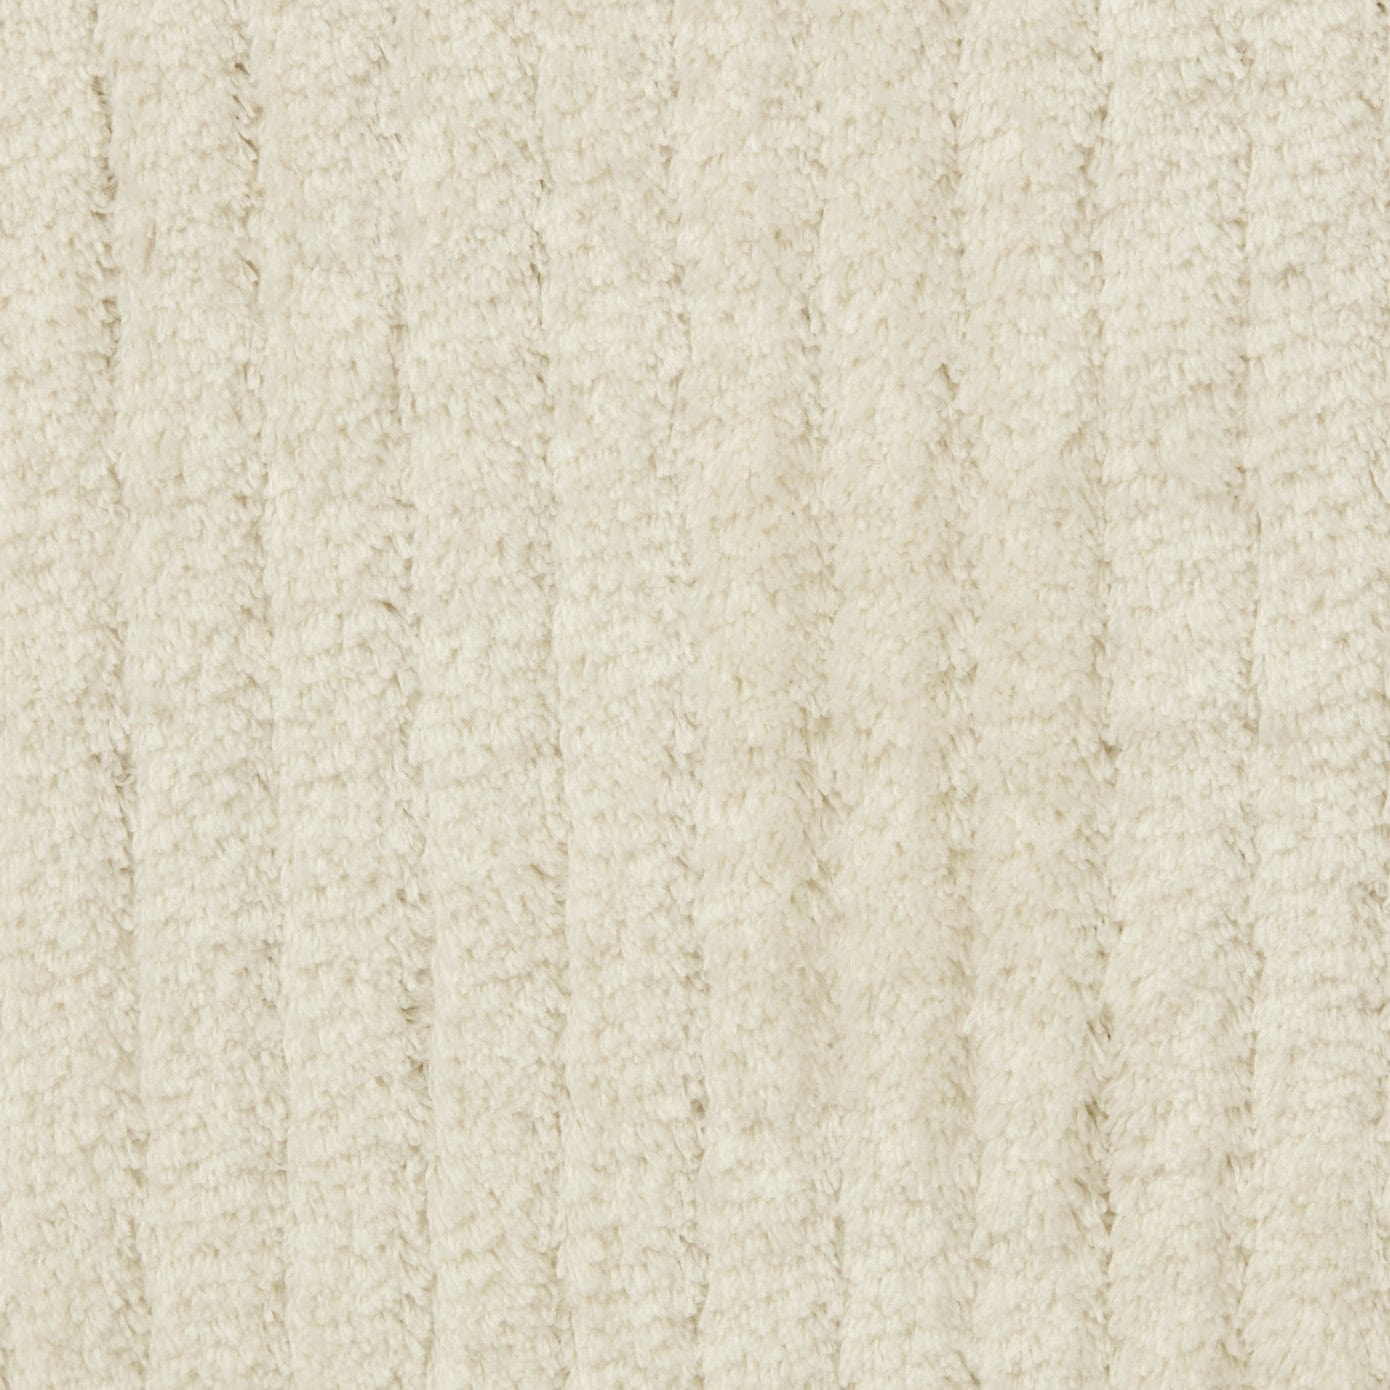 Kashmir Carpet 7/24 Four Seasons White 120x180 cm ZEFASH